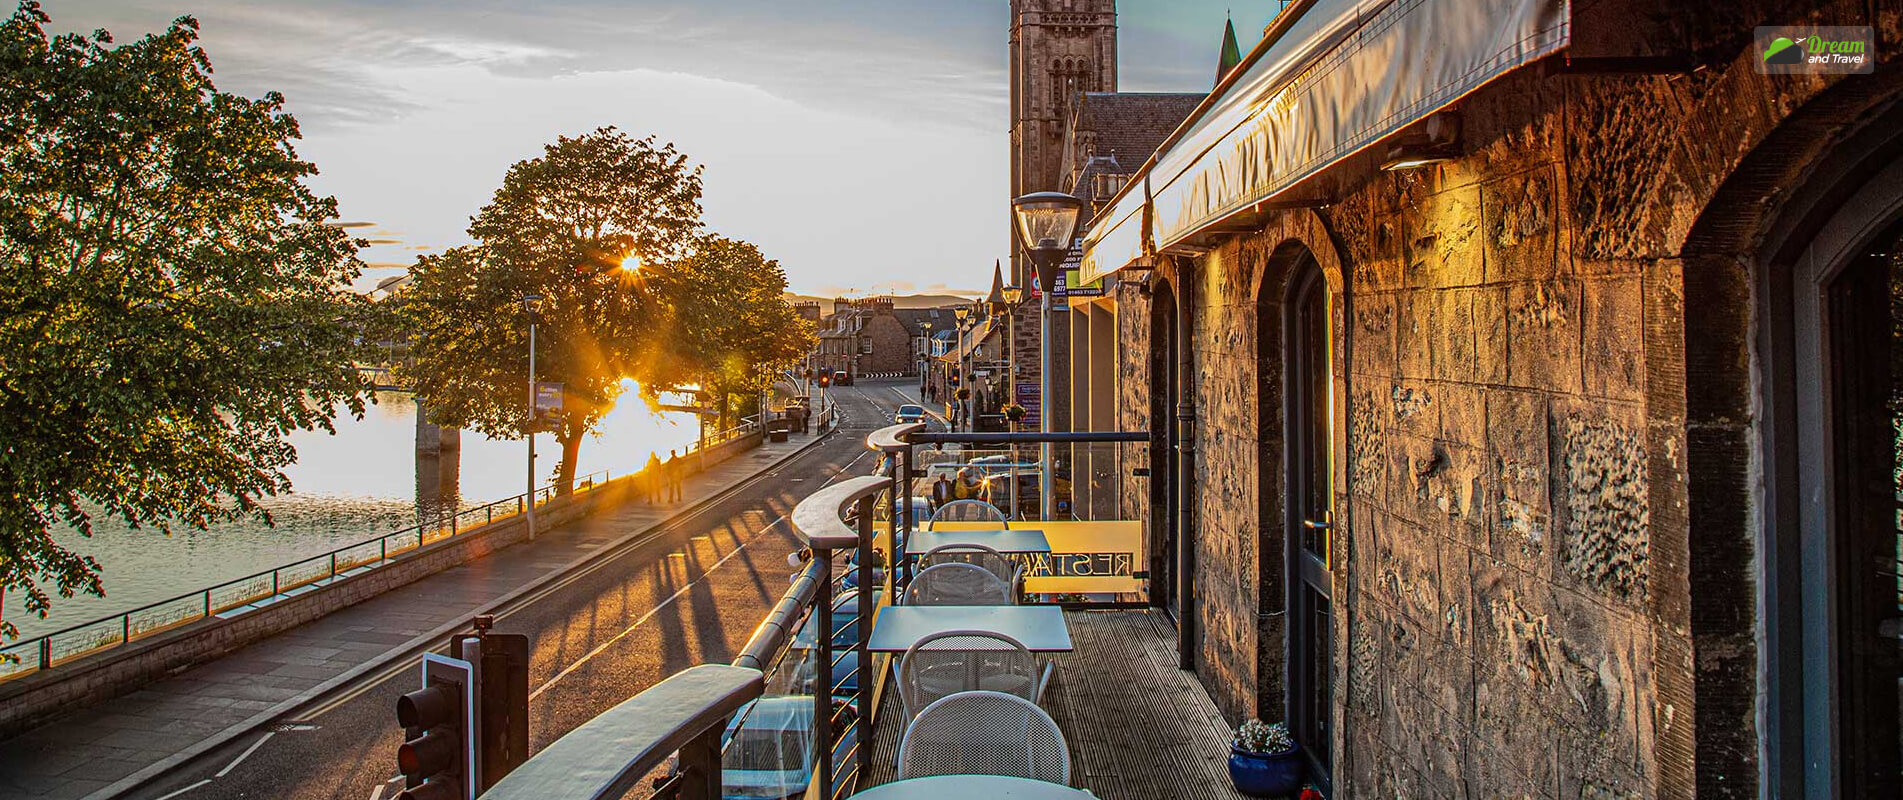 Best restaurants Inverness